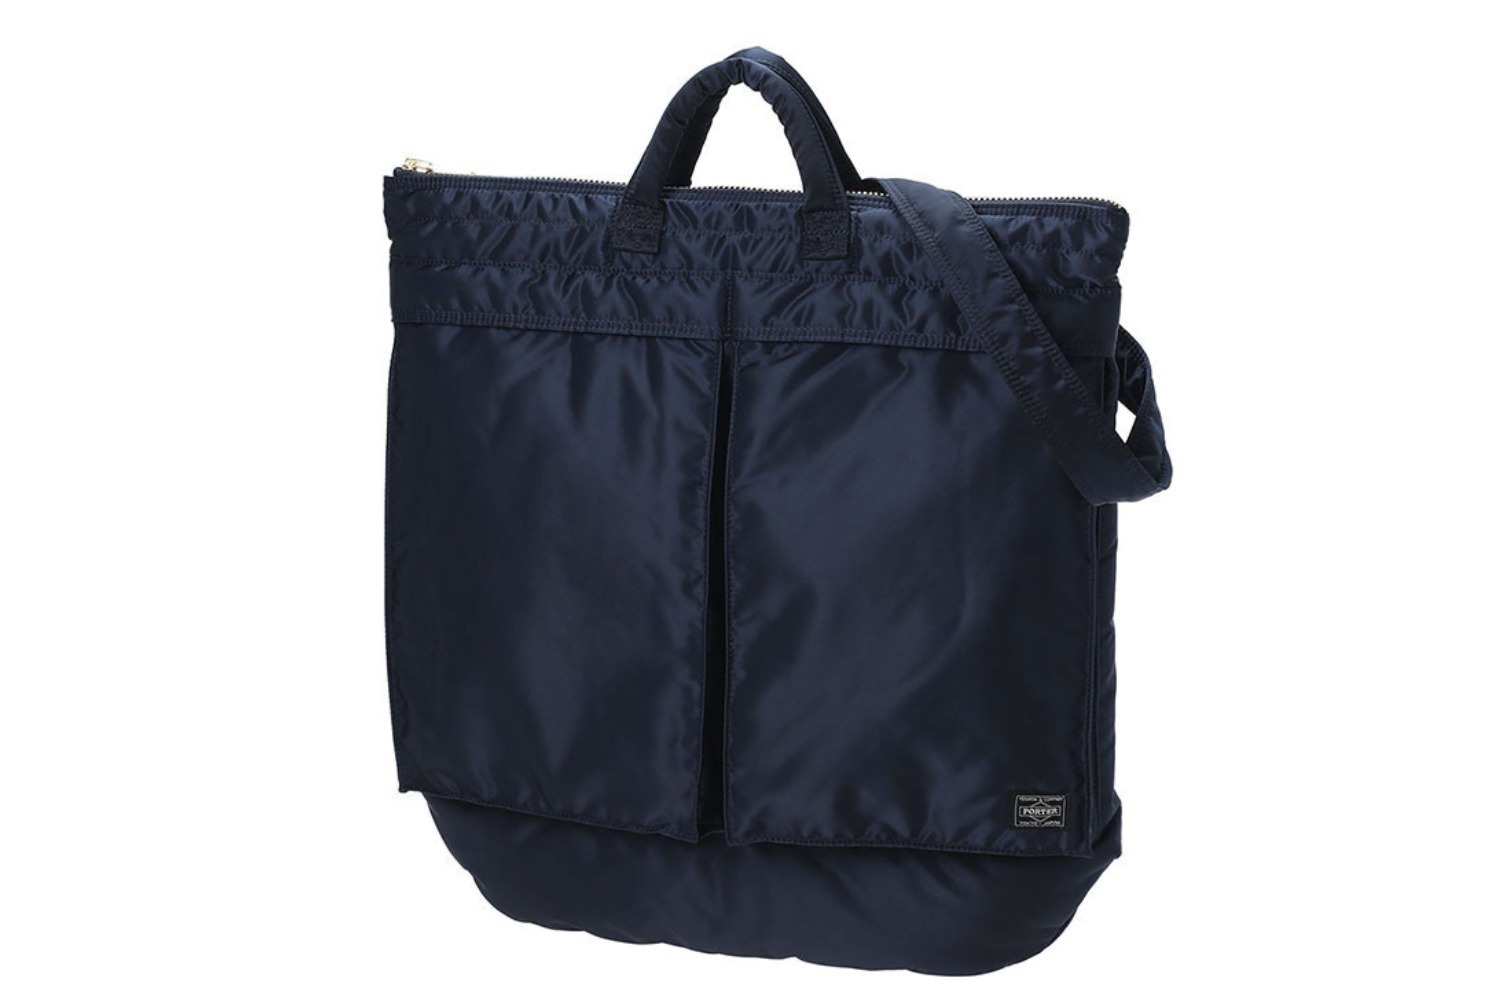 ポーターのバッグ「タンカー」新色、日本の伝統色着想“アイアンブルー 